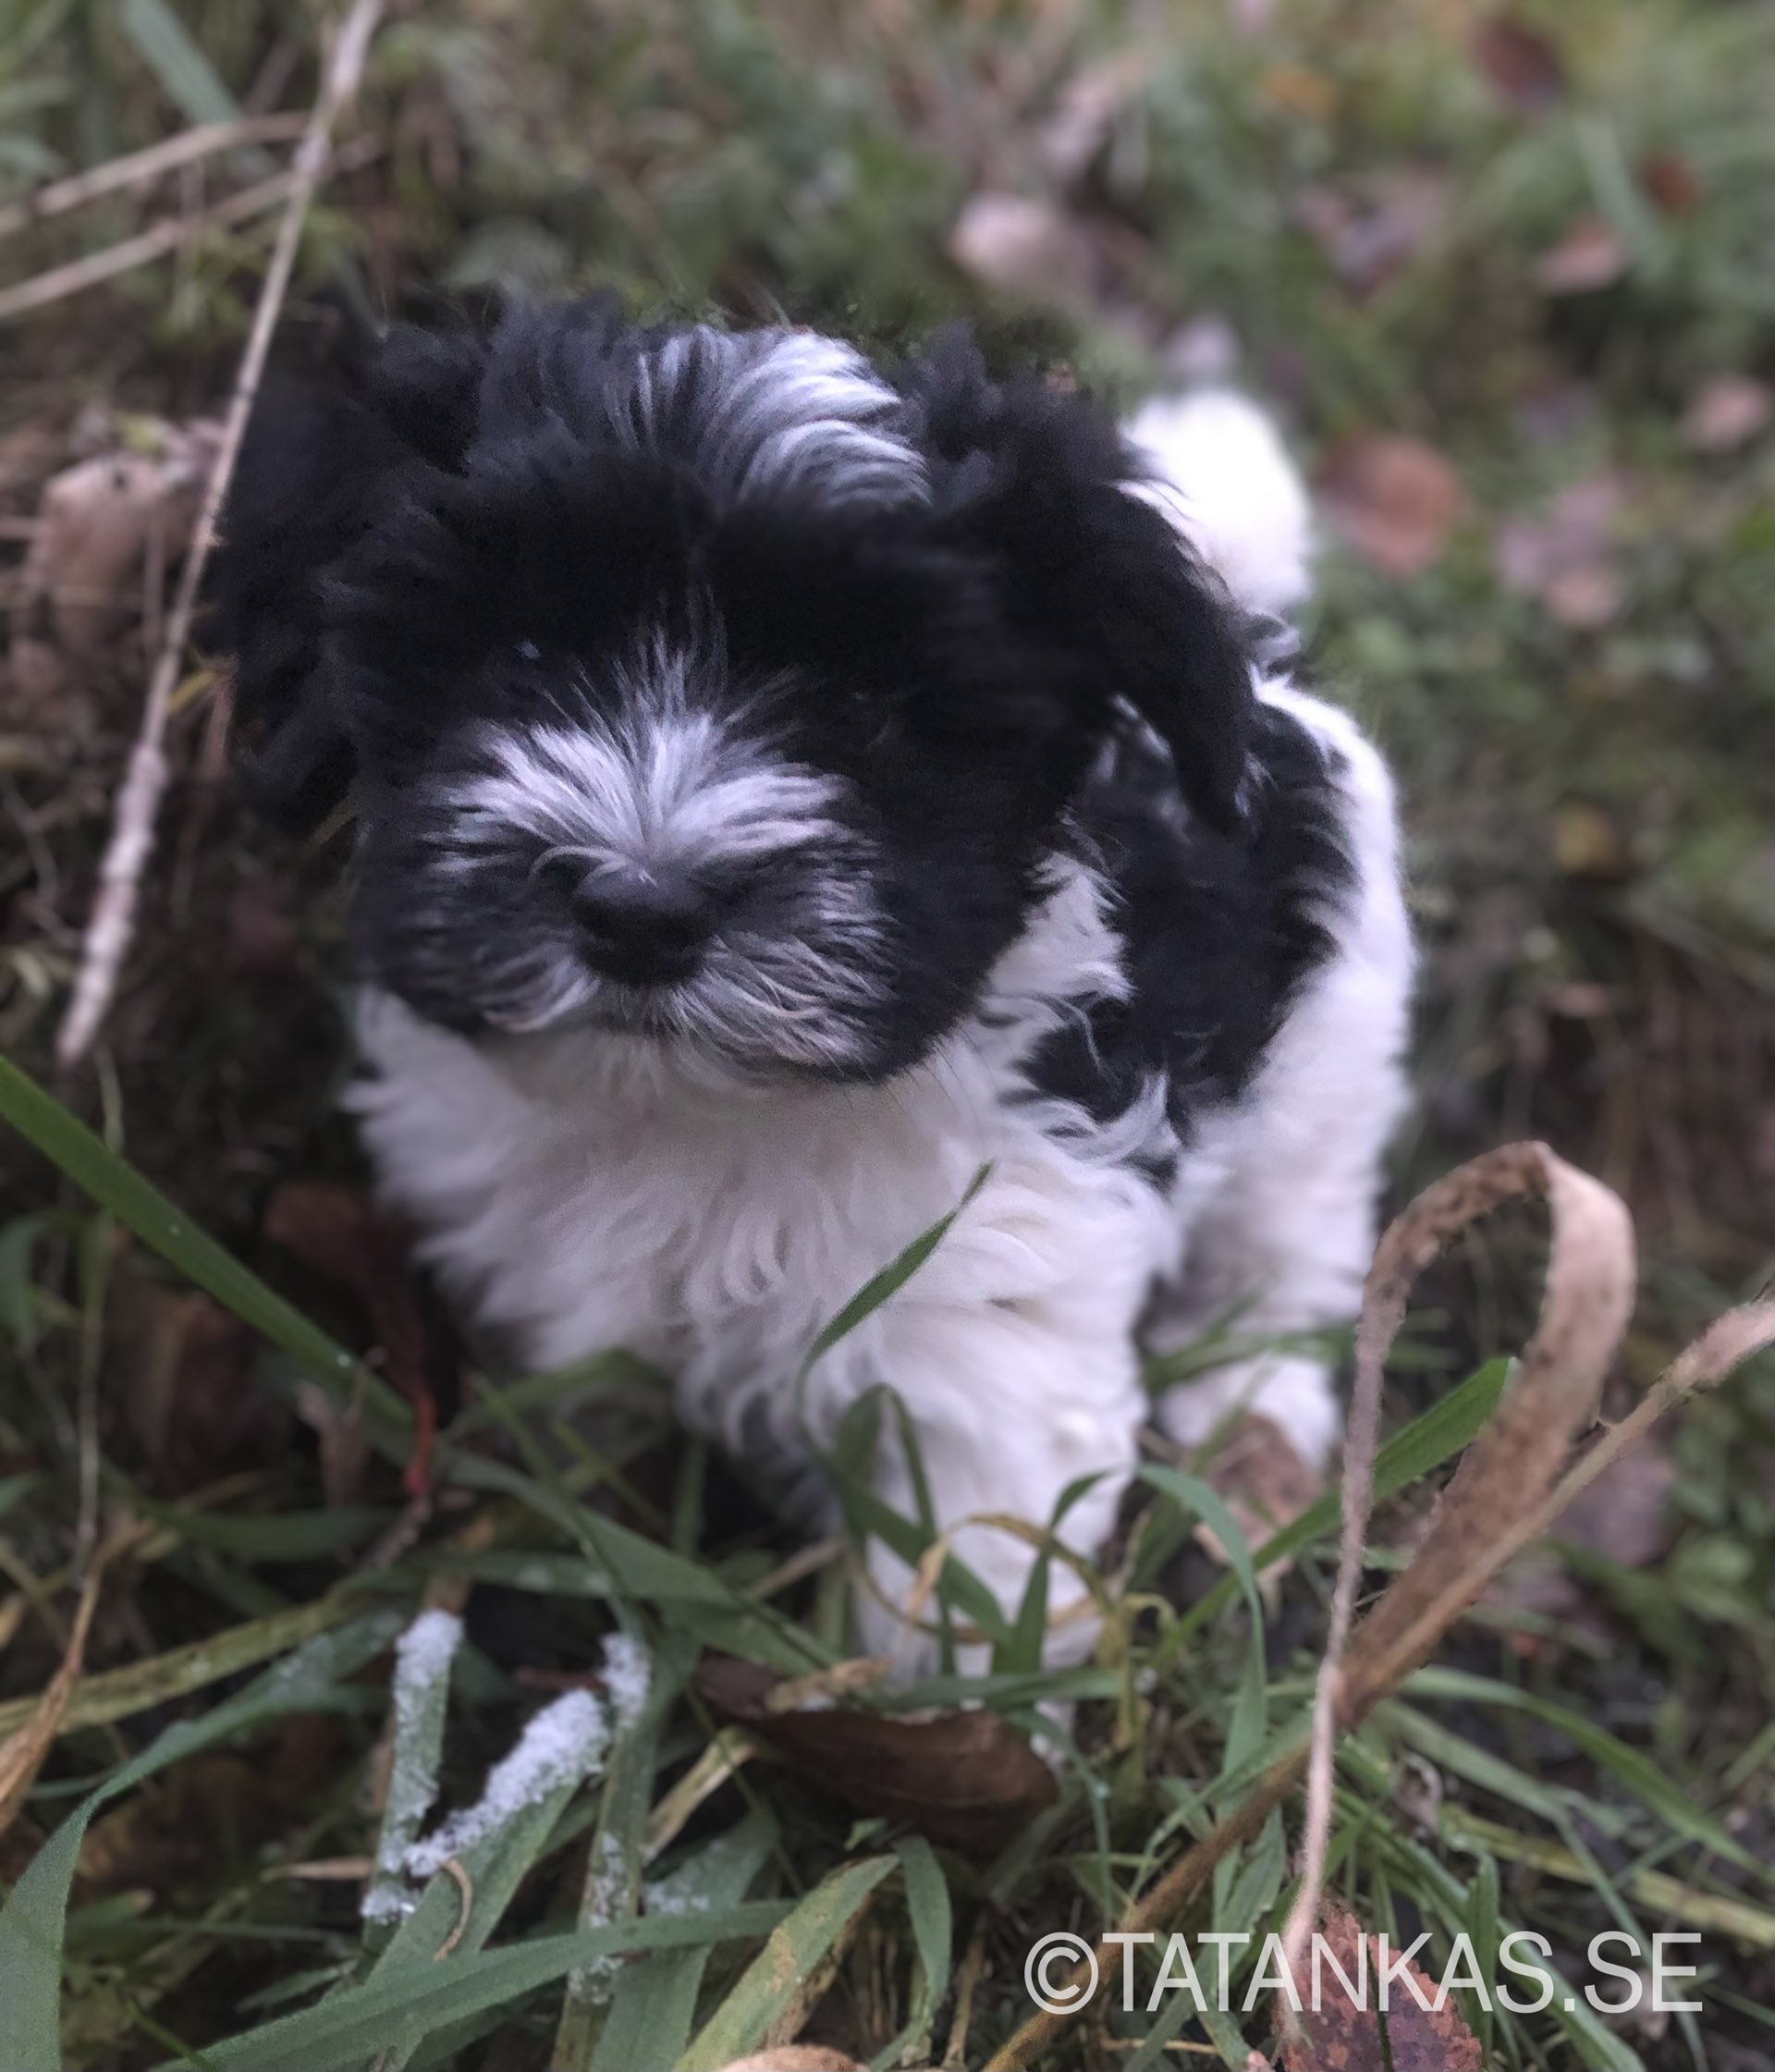 Bichon Havanais puppy in the grass